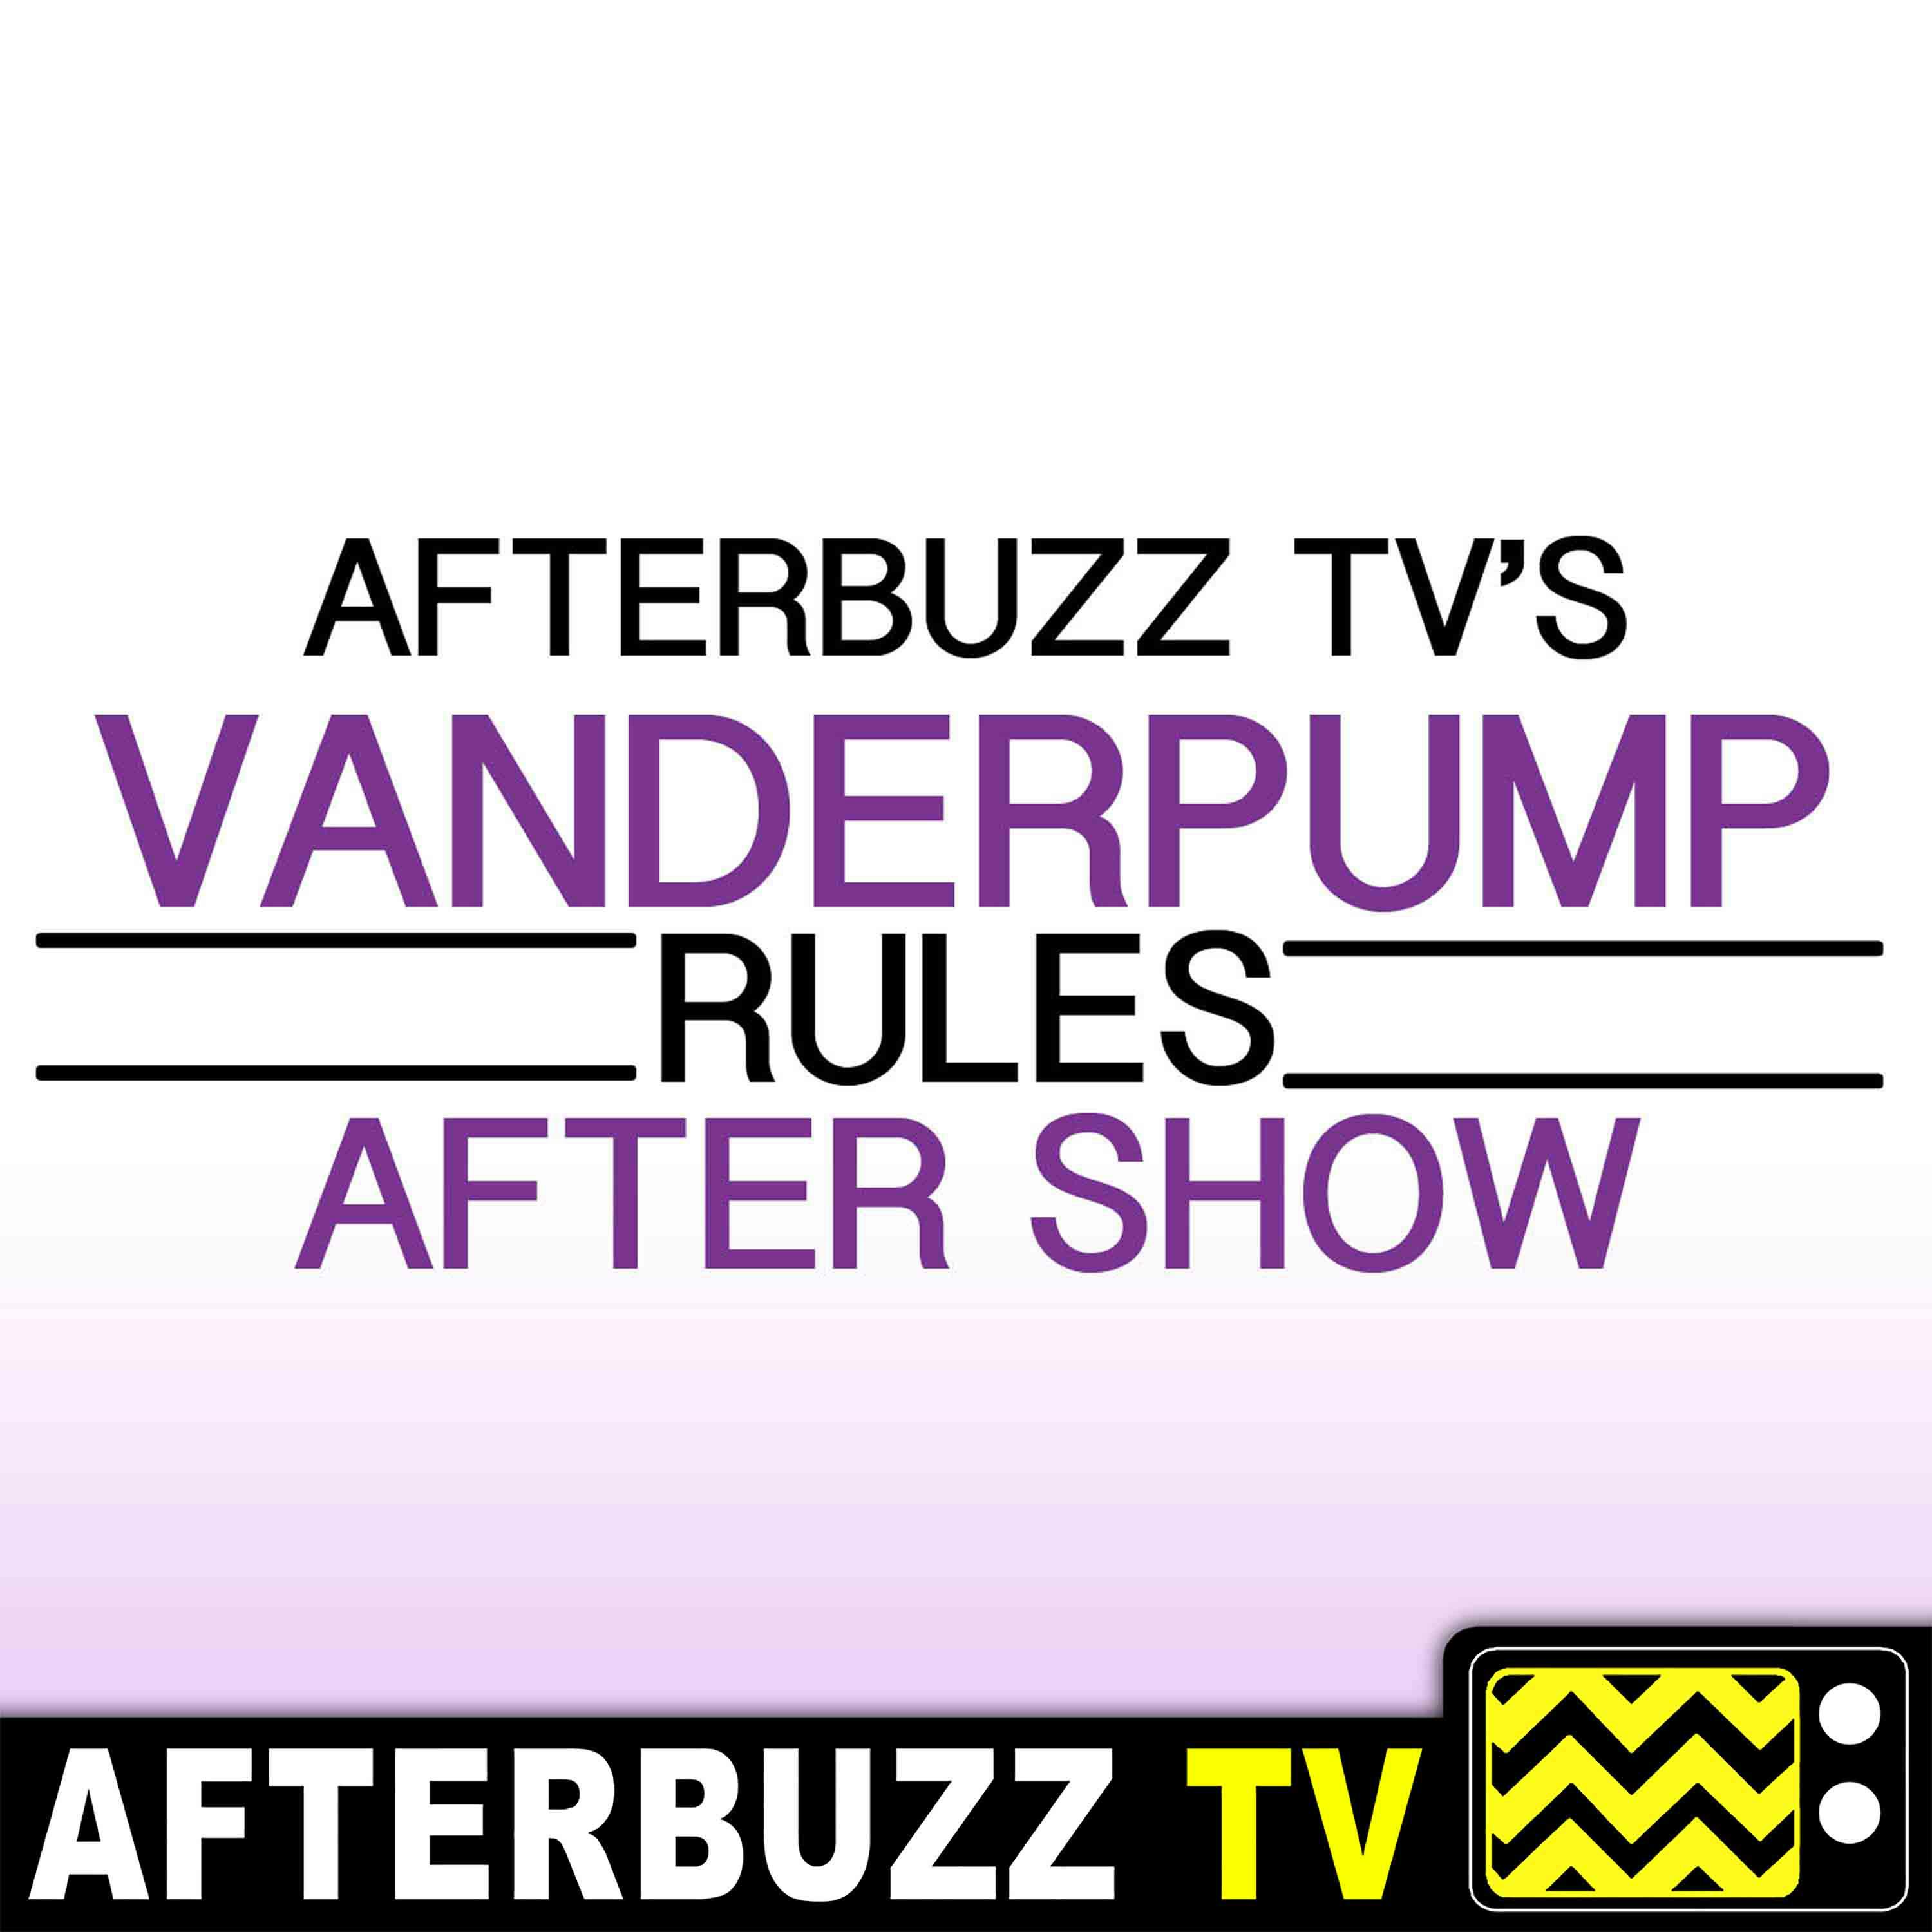 "Reunion Part 2" Season 7 Episode 22 'Vanderpump Rules' Review